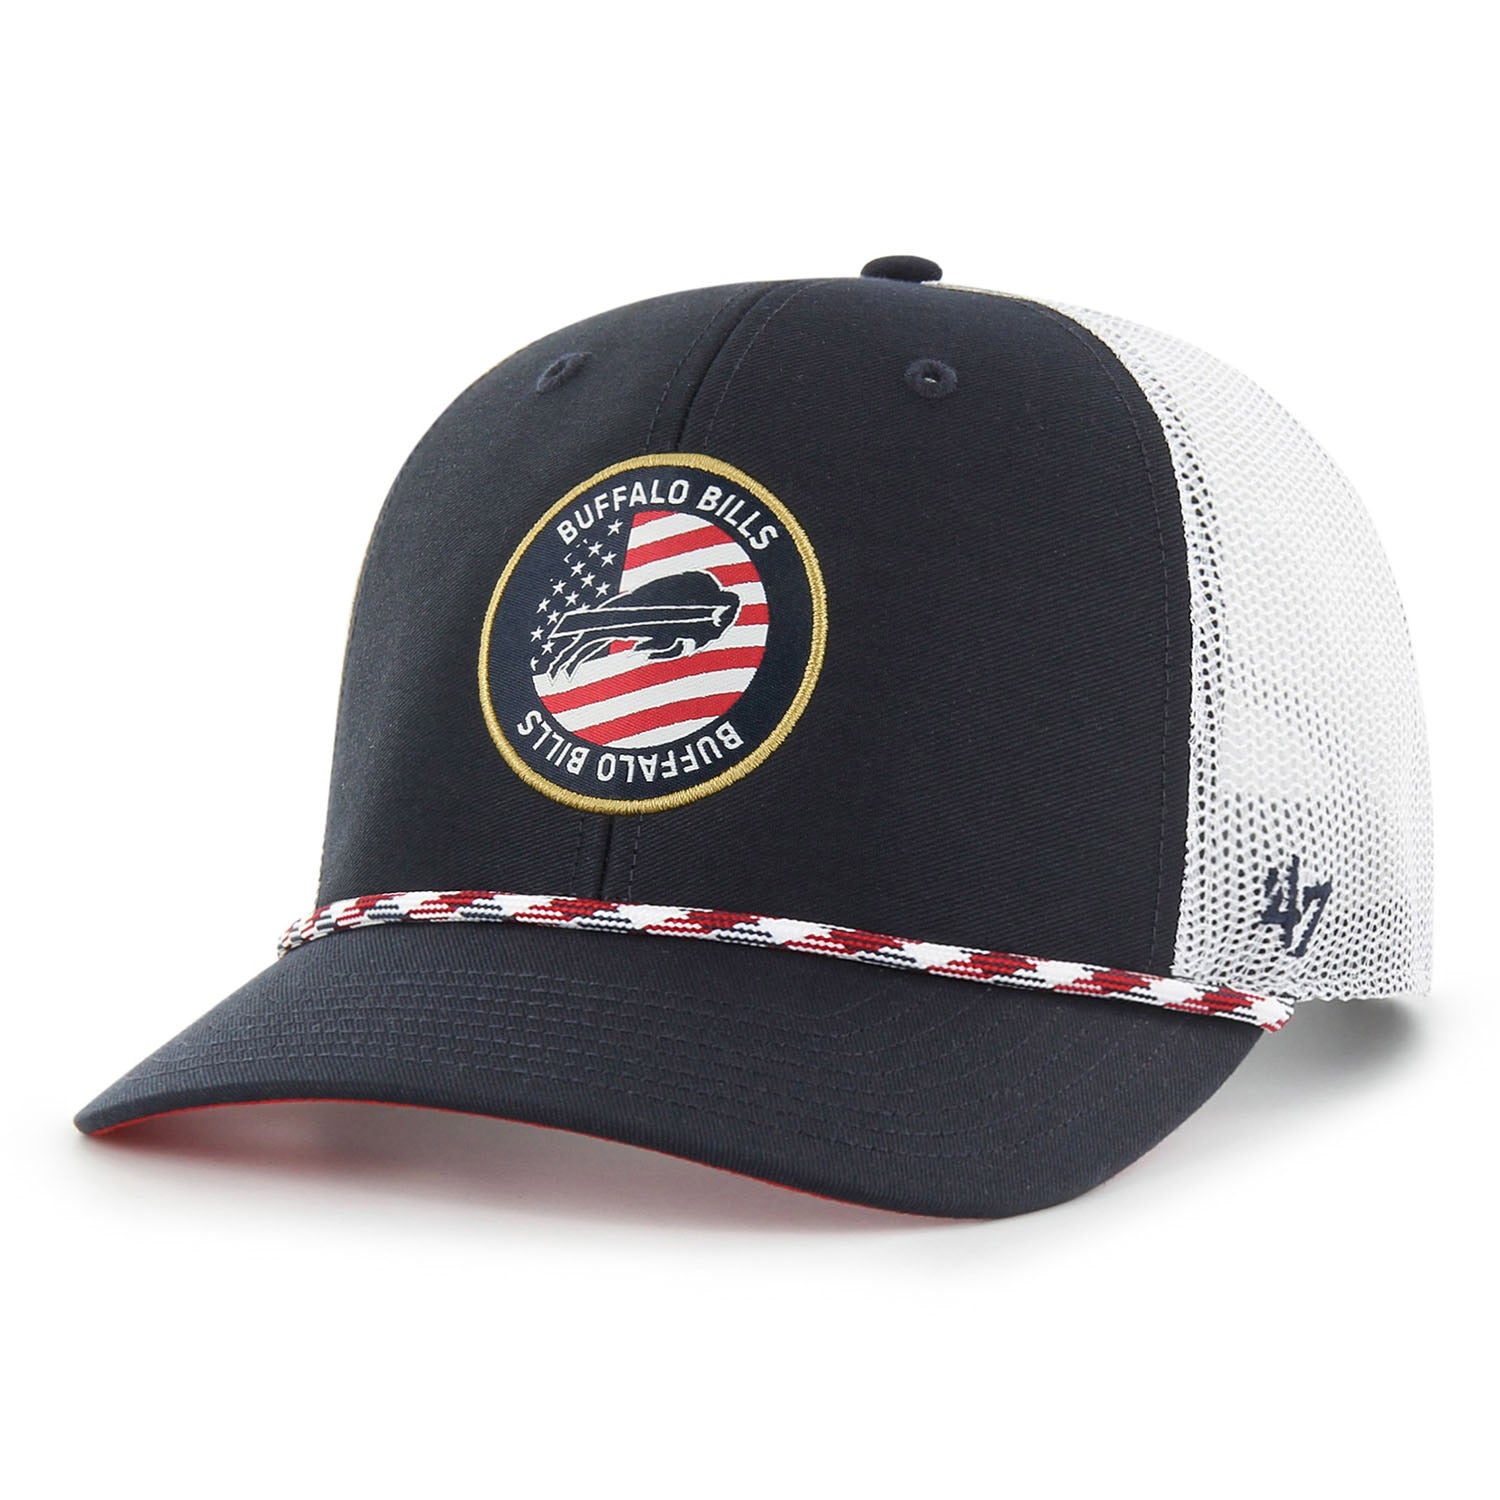 47 Brand Bills Union Patch Flag Trucker Hat